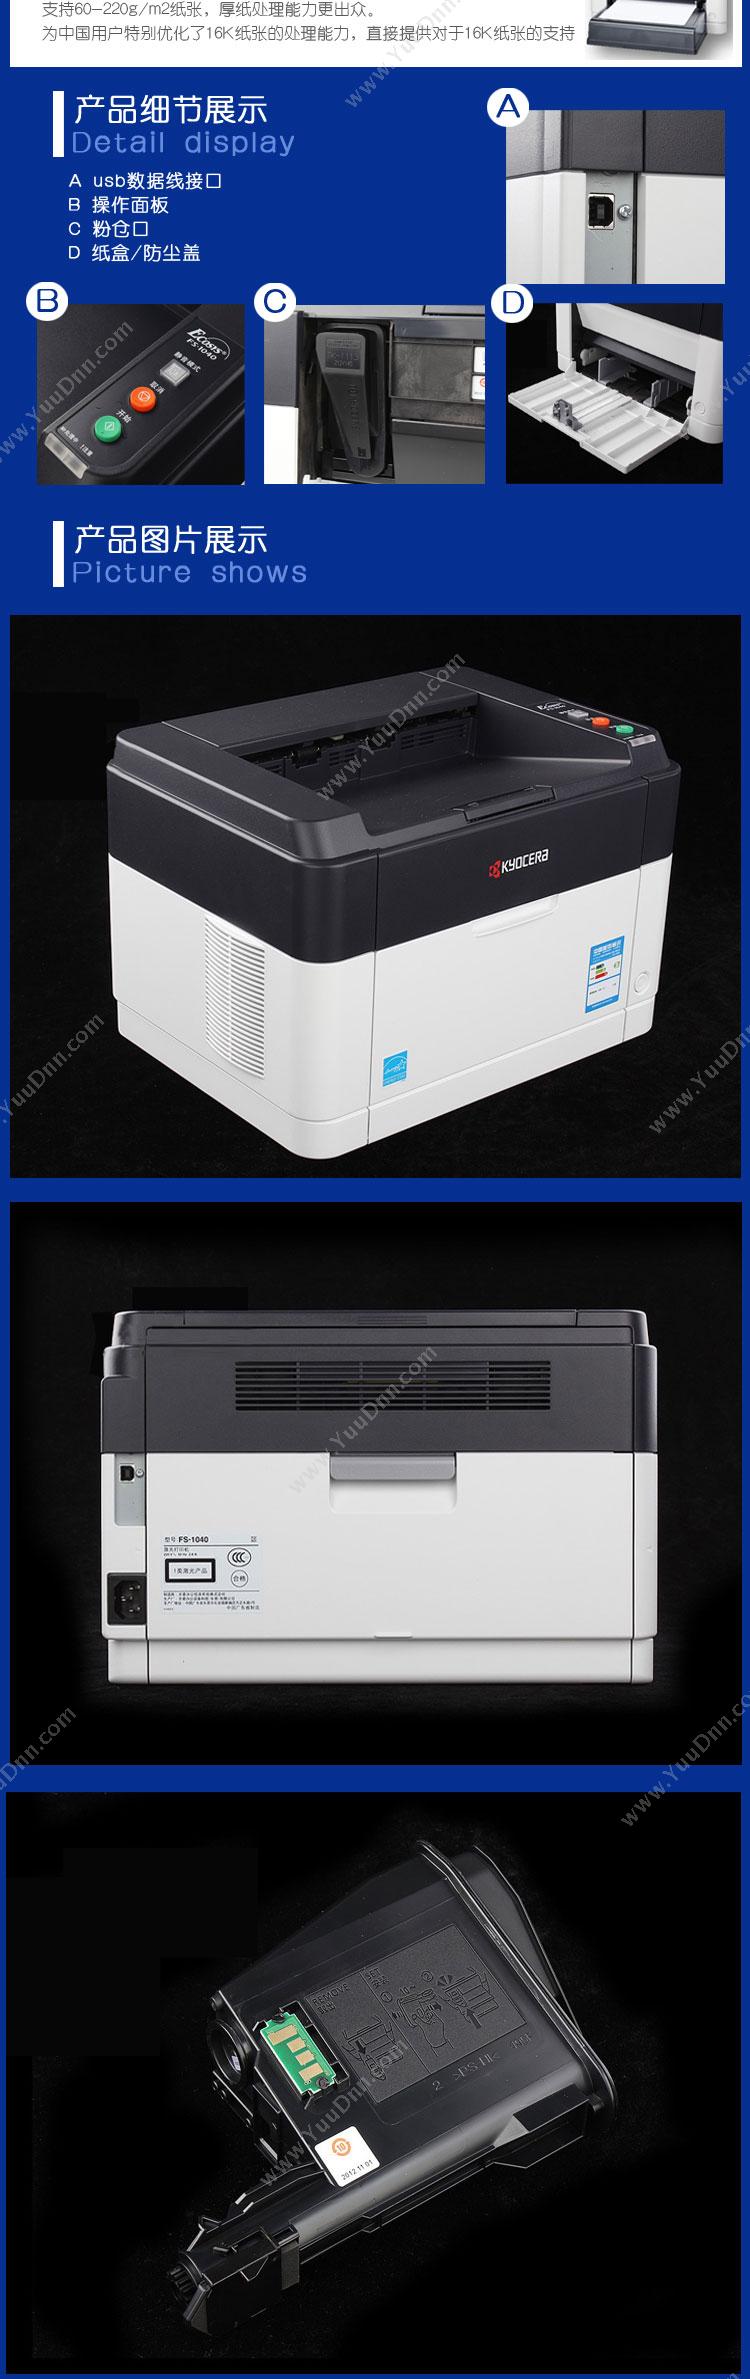 京瓷 Kyocera FS-1040  A4  打印 A4黑白激光打印机